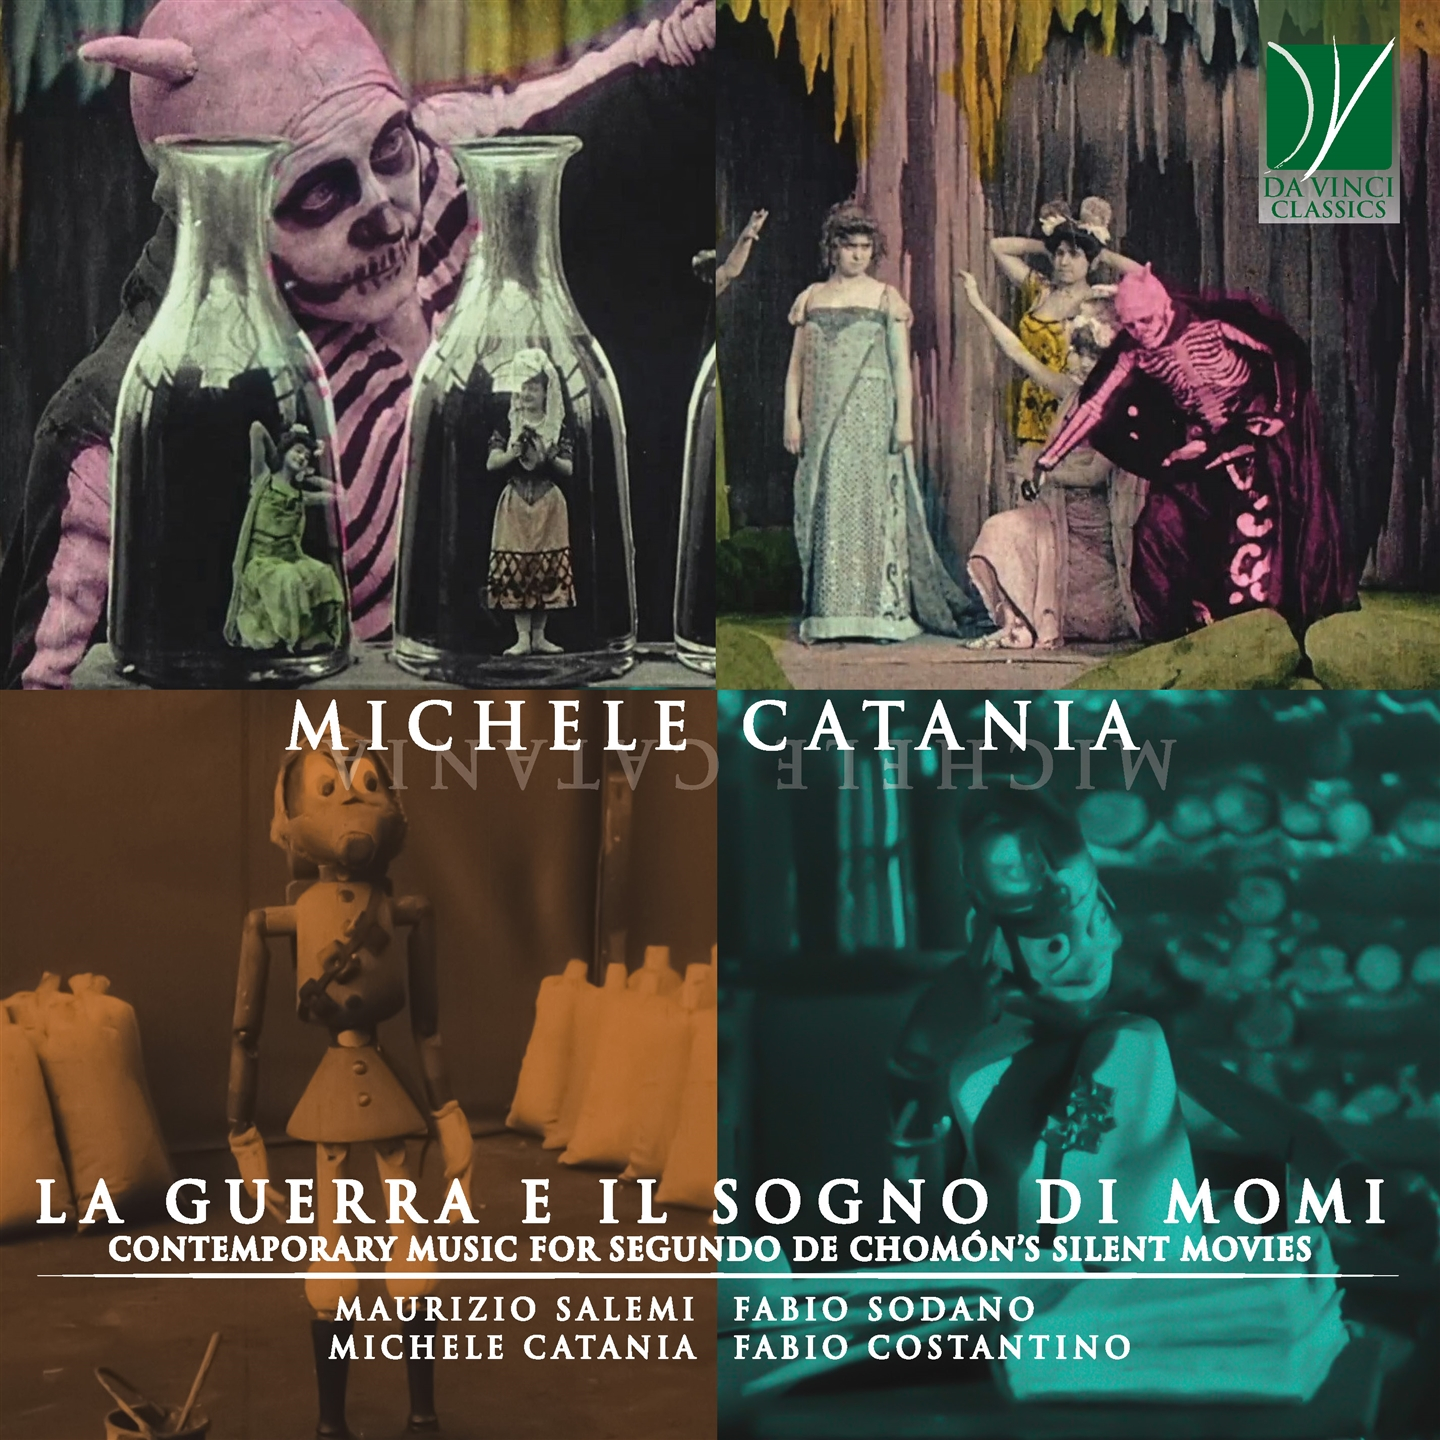 MICHELE CATANIA: LA GUERRA E IL SOGNO DI MOMI, CONTEMPORARY MUSIC FOR SEGUNDO D